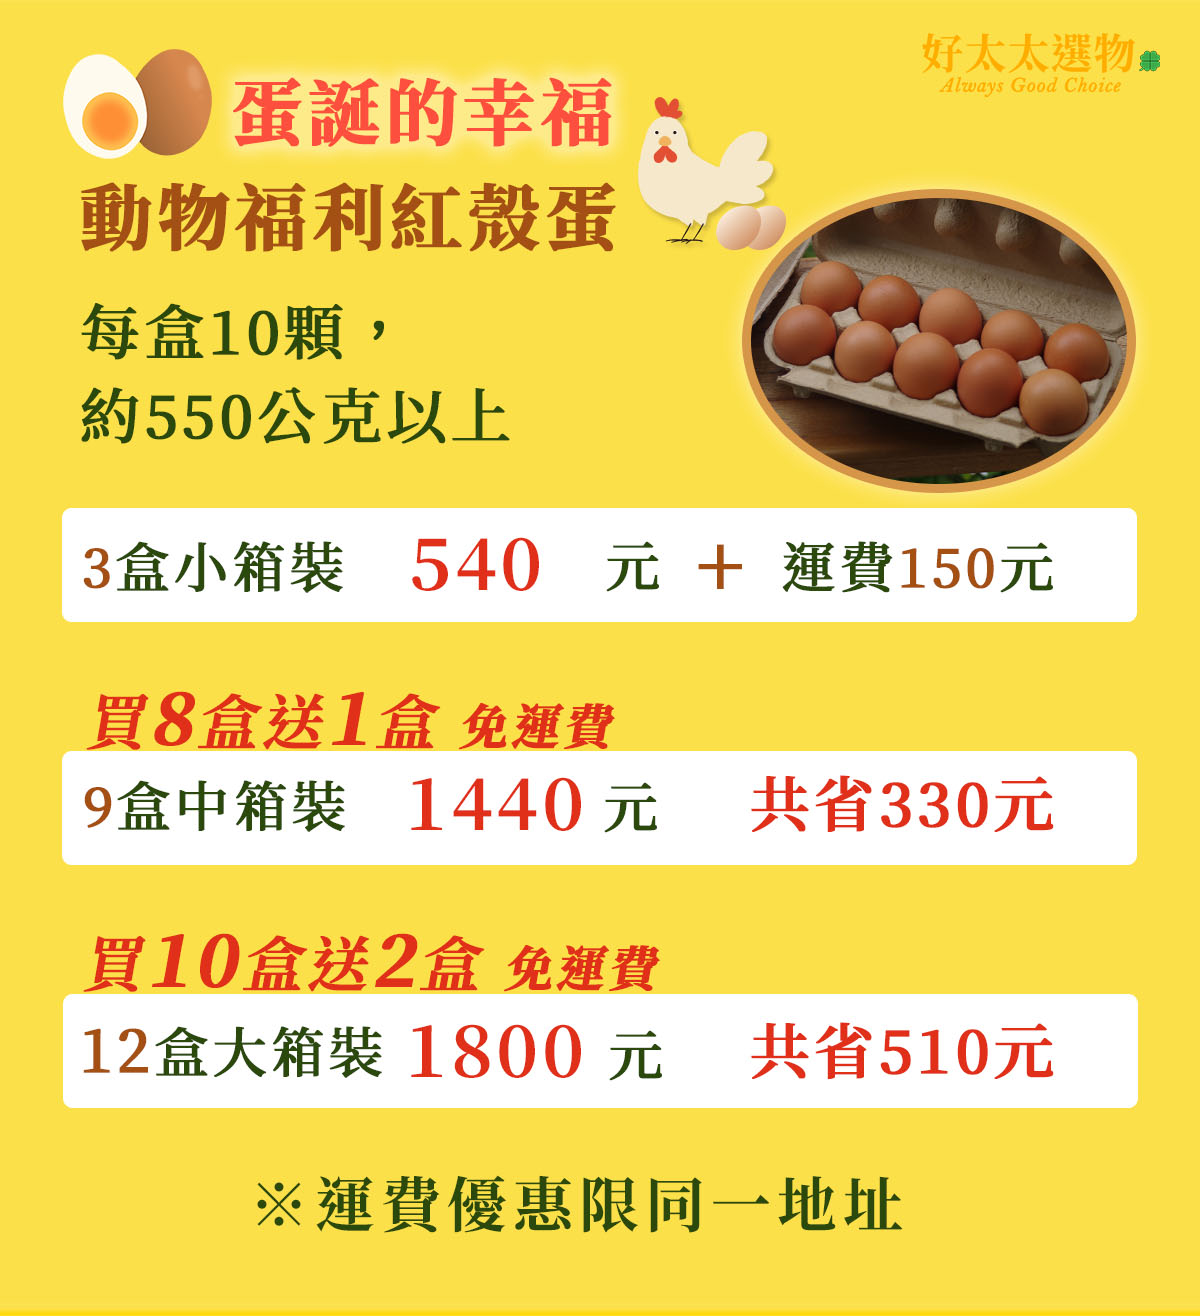 蛋誕的幸福 動物福利紅殼雞蛋價目表